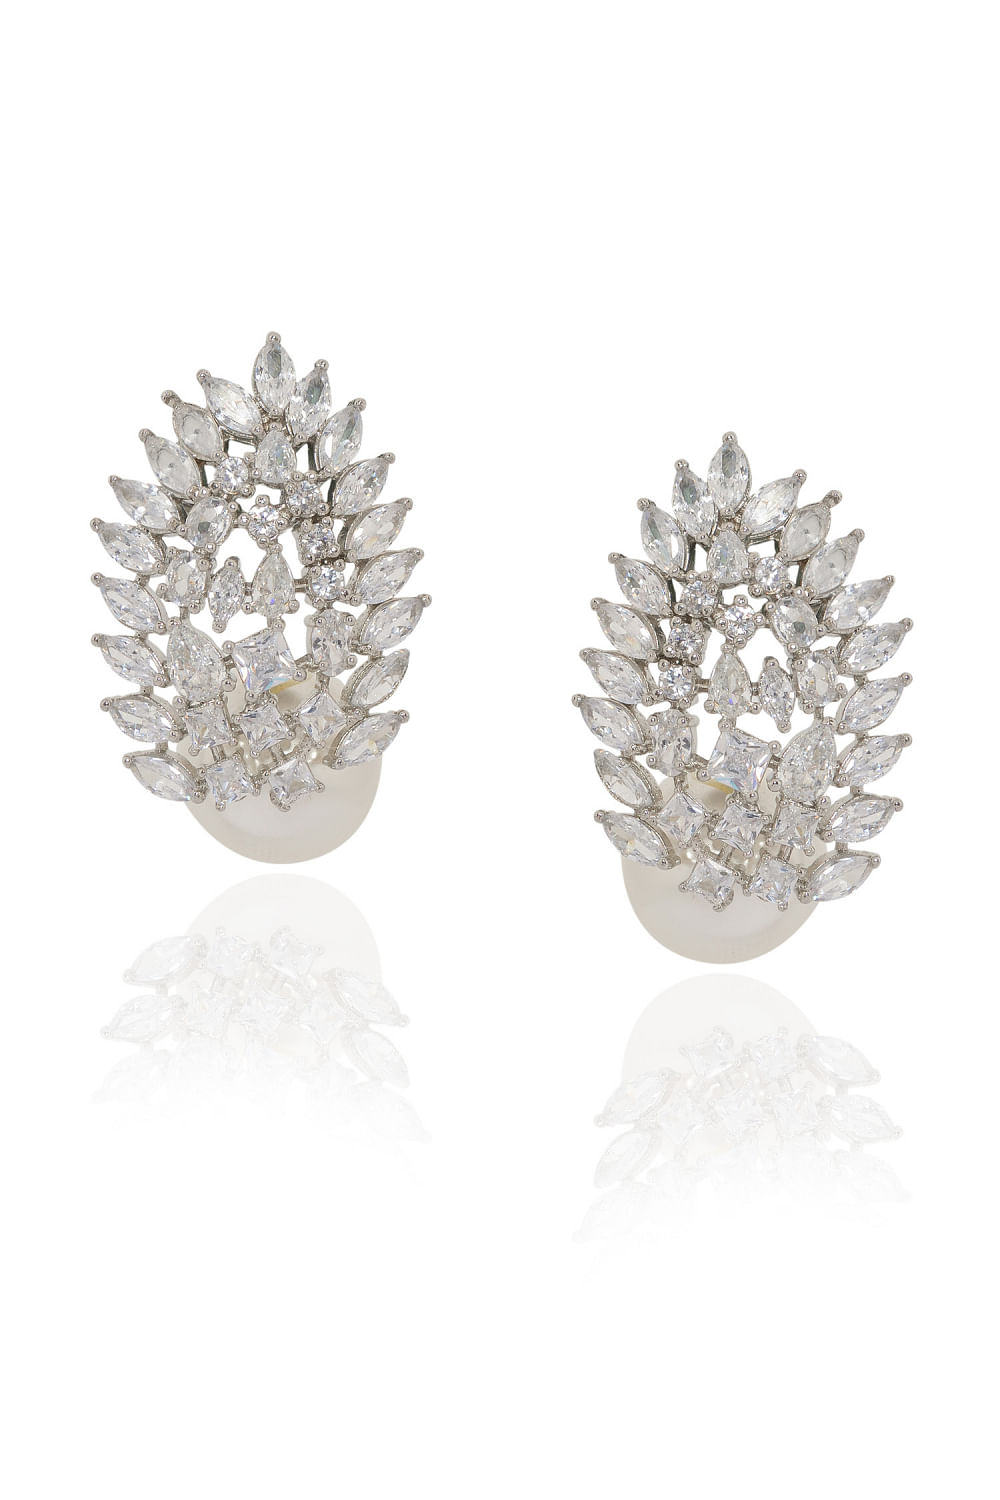 Buy Silver Linings Cone Handmade Silver Filigree Studs Earrings For Women –  Okhaistore